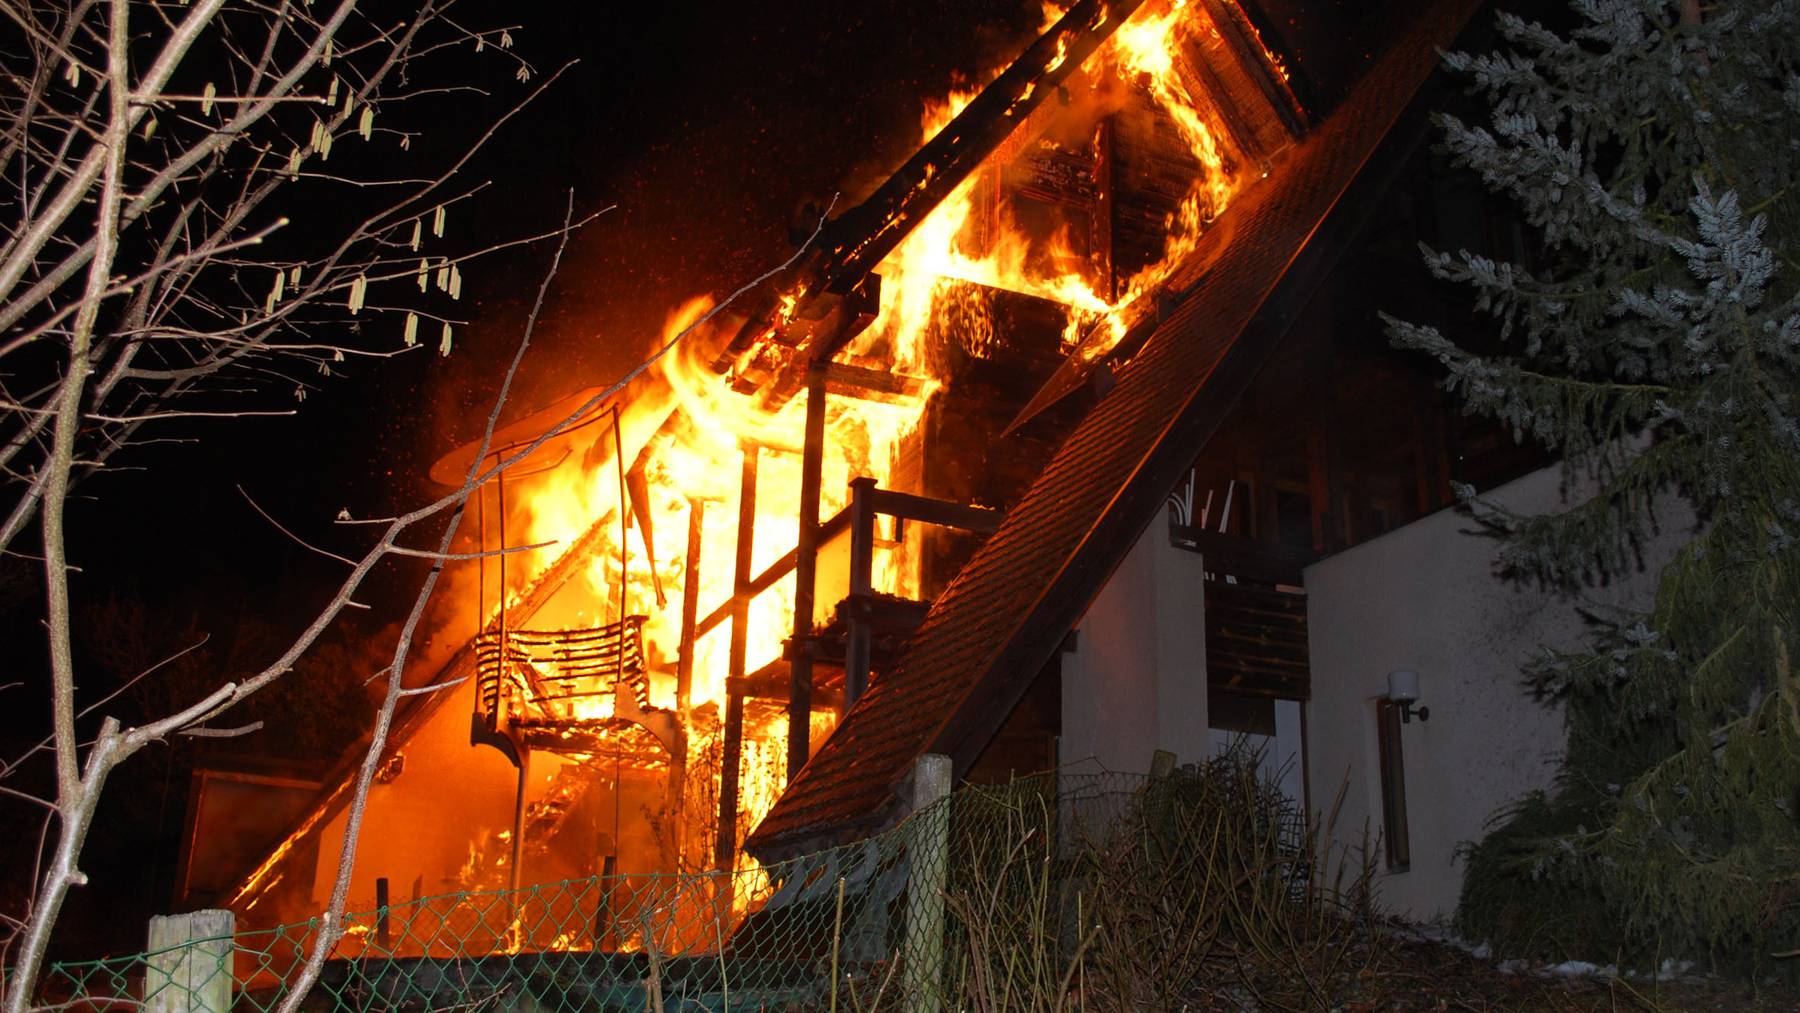 Brand in Ebikon - Einfamilienhaus in Flammen